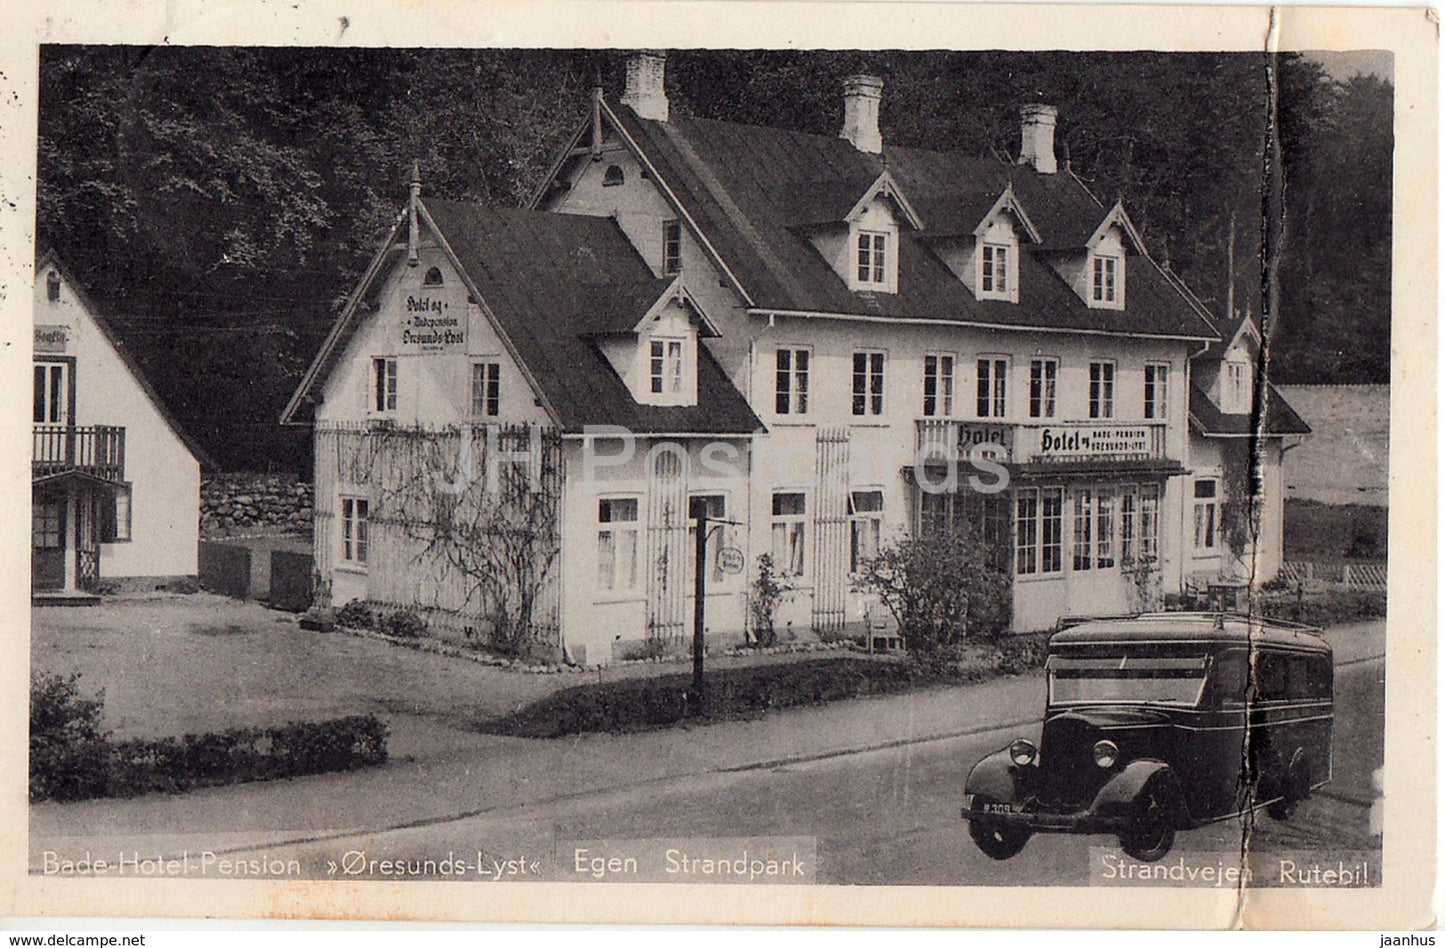 Bade Hotel Pension Oresunds Lyst - Egen Strandpark - old bus - old postcard - 1937 - Denmark - used - JH Postcards